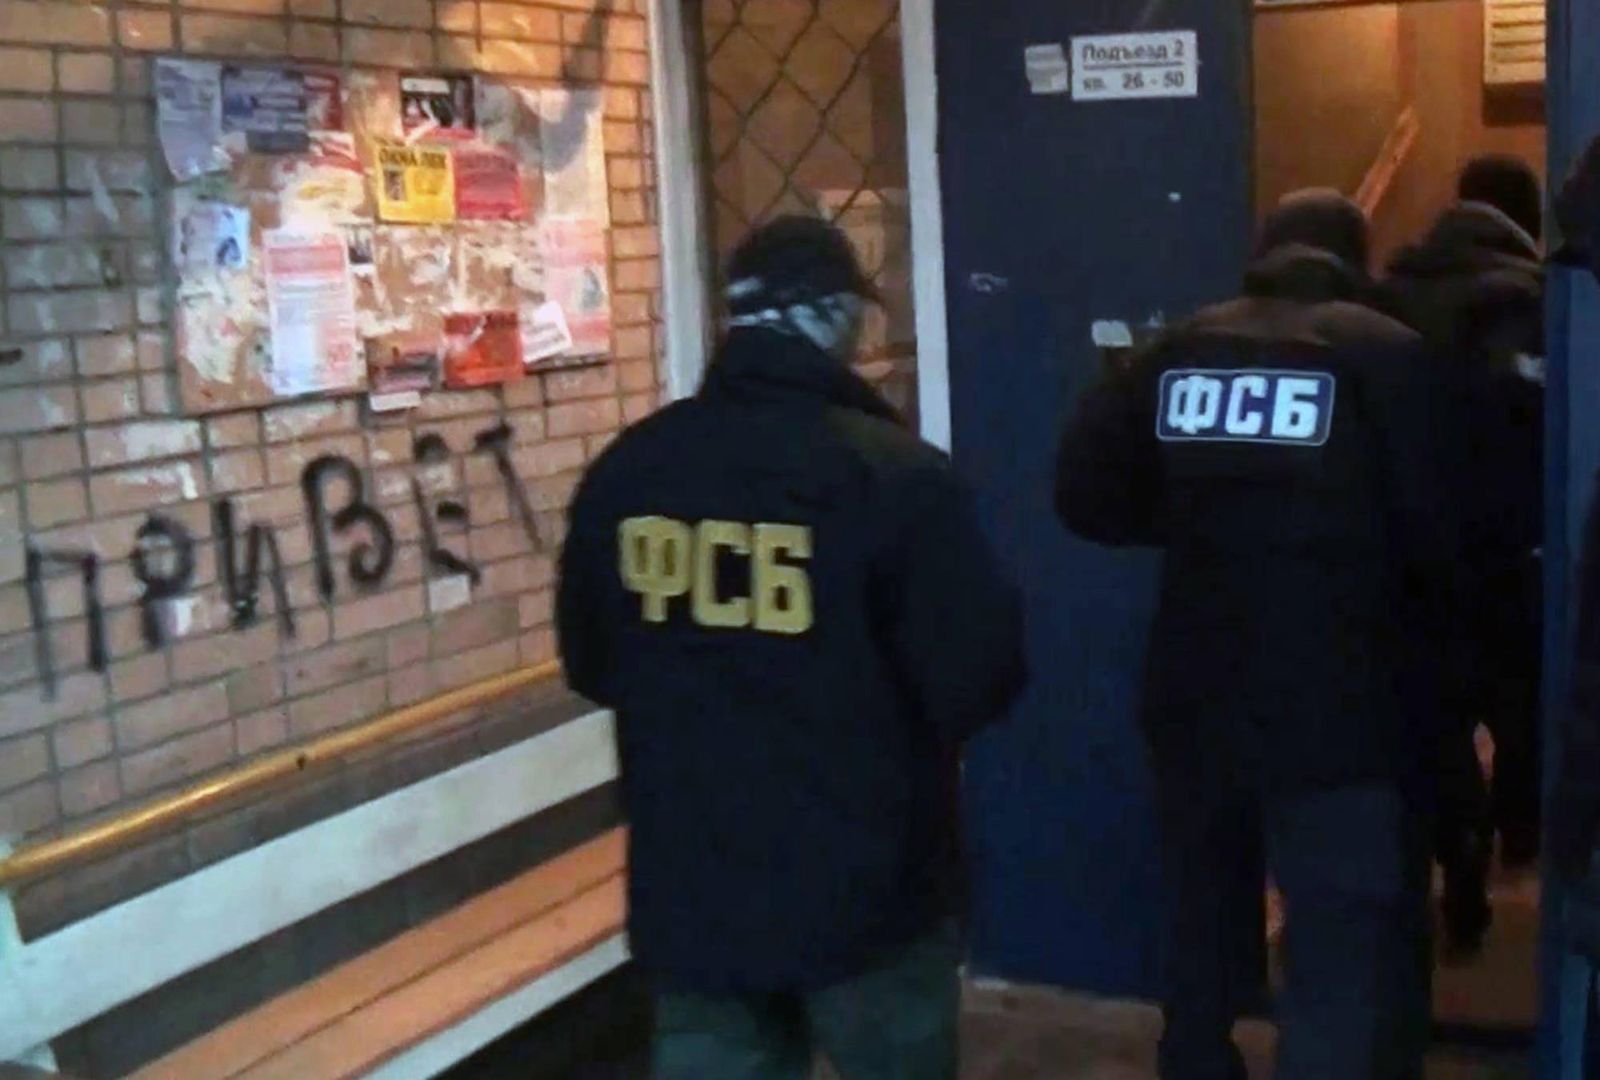 FSB znalazła tajne materiały w mieszkaniach w Jekaterynburgu, Symferopolu i Omsku